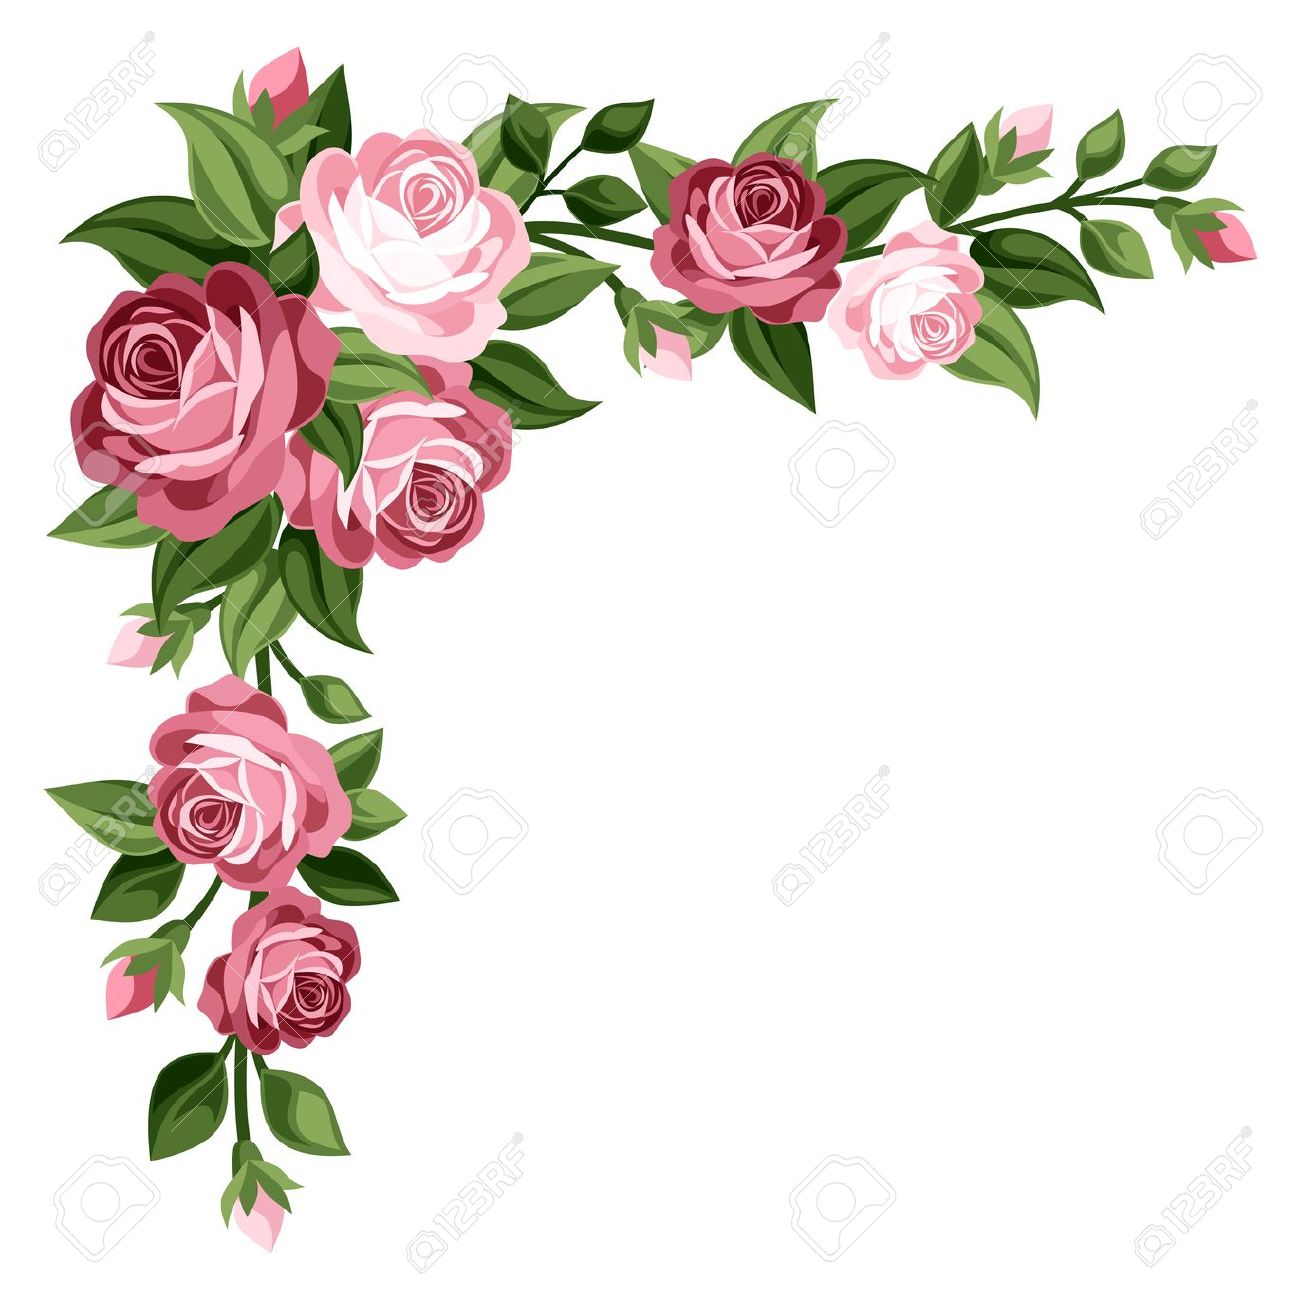 Rose Flower Border Clipart - Flower Border Clip Art